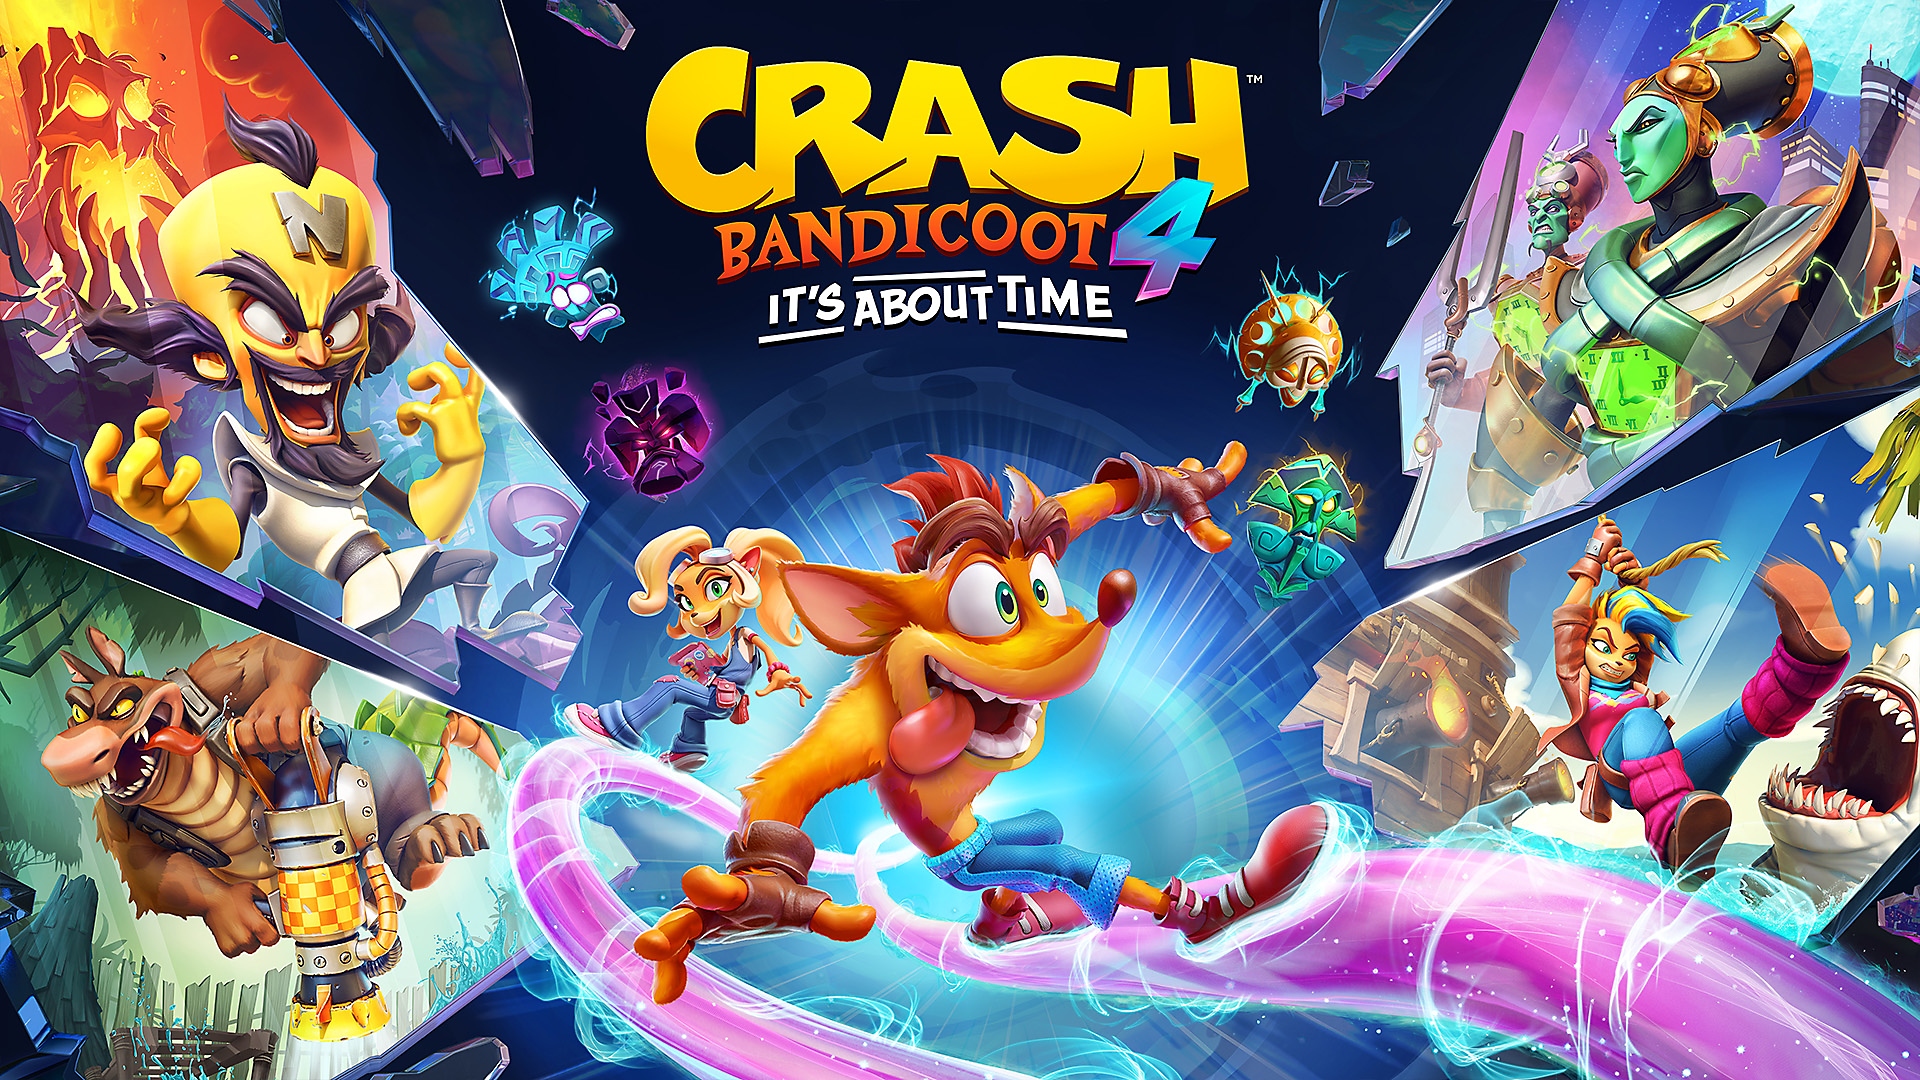 Crash Bandicoot 4: releasetrailer